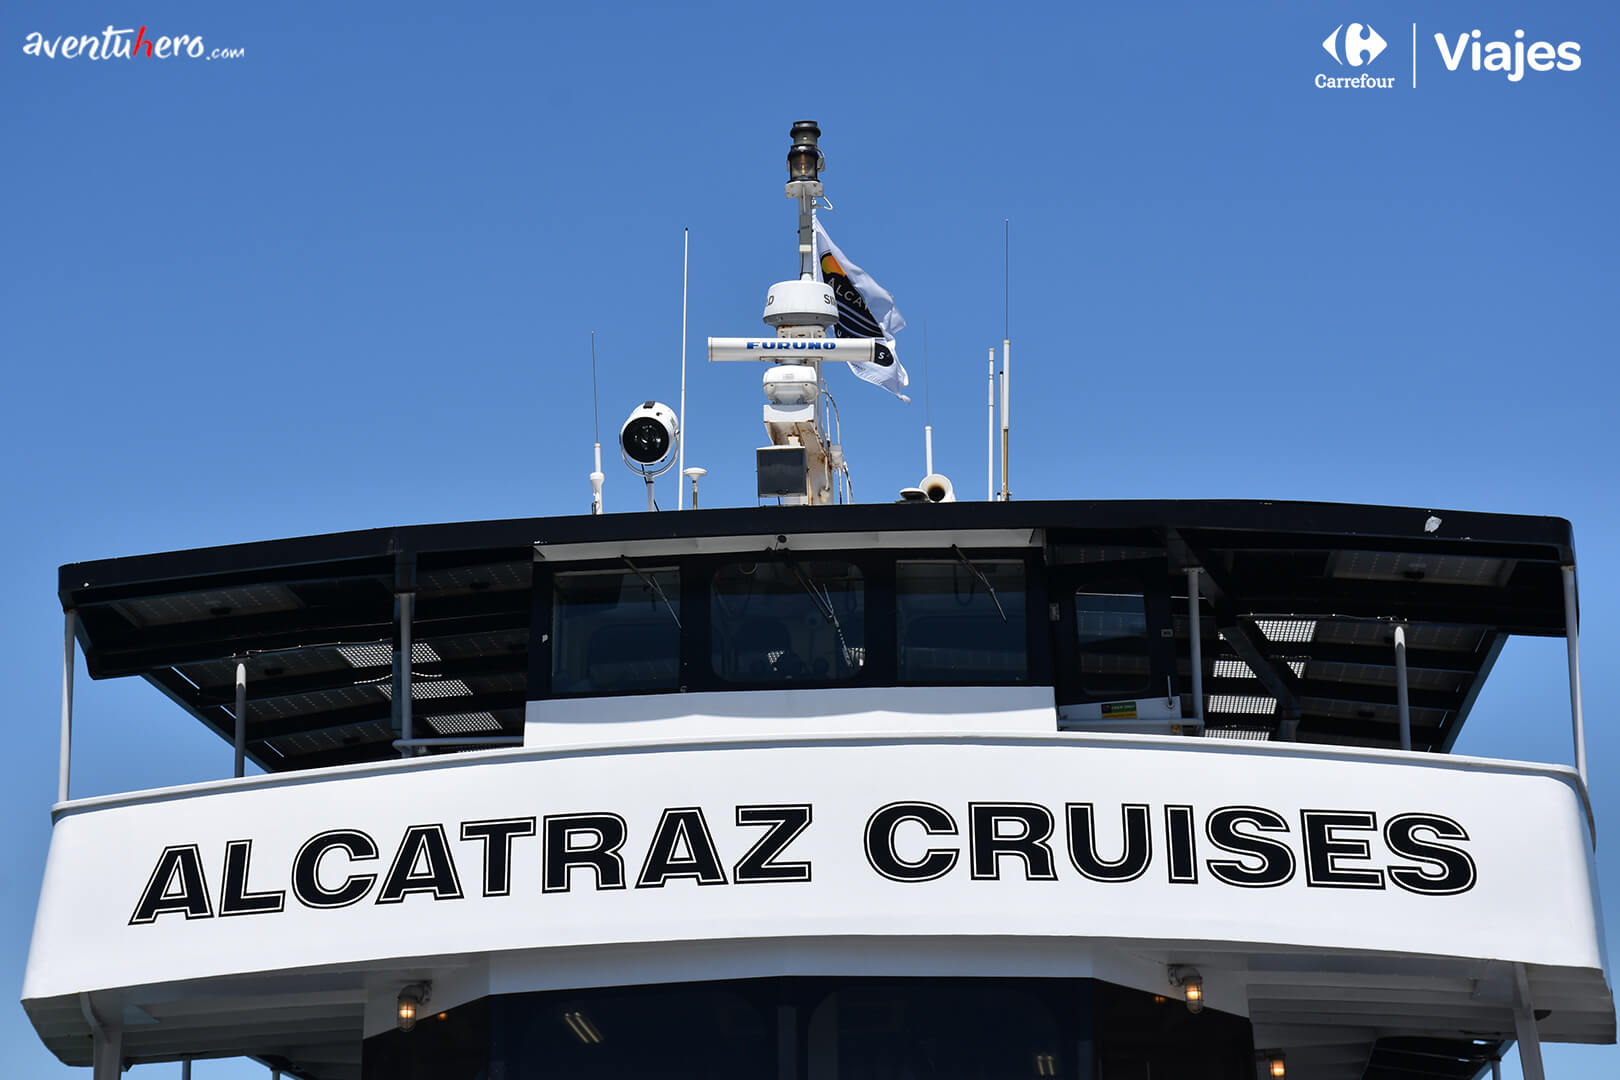 Alcatraz cruises